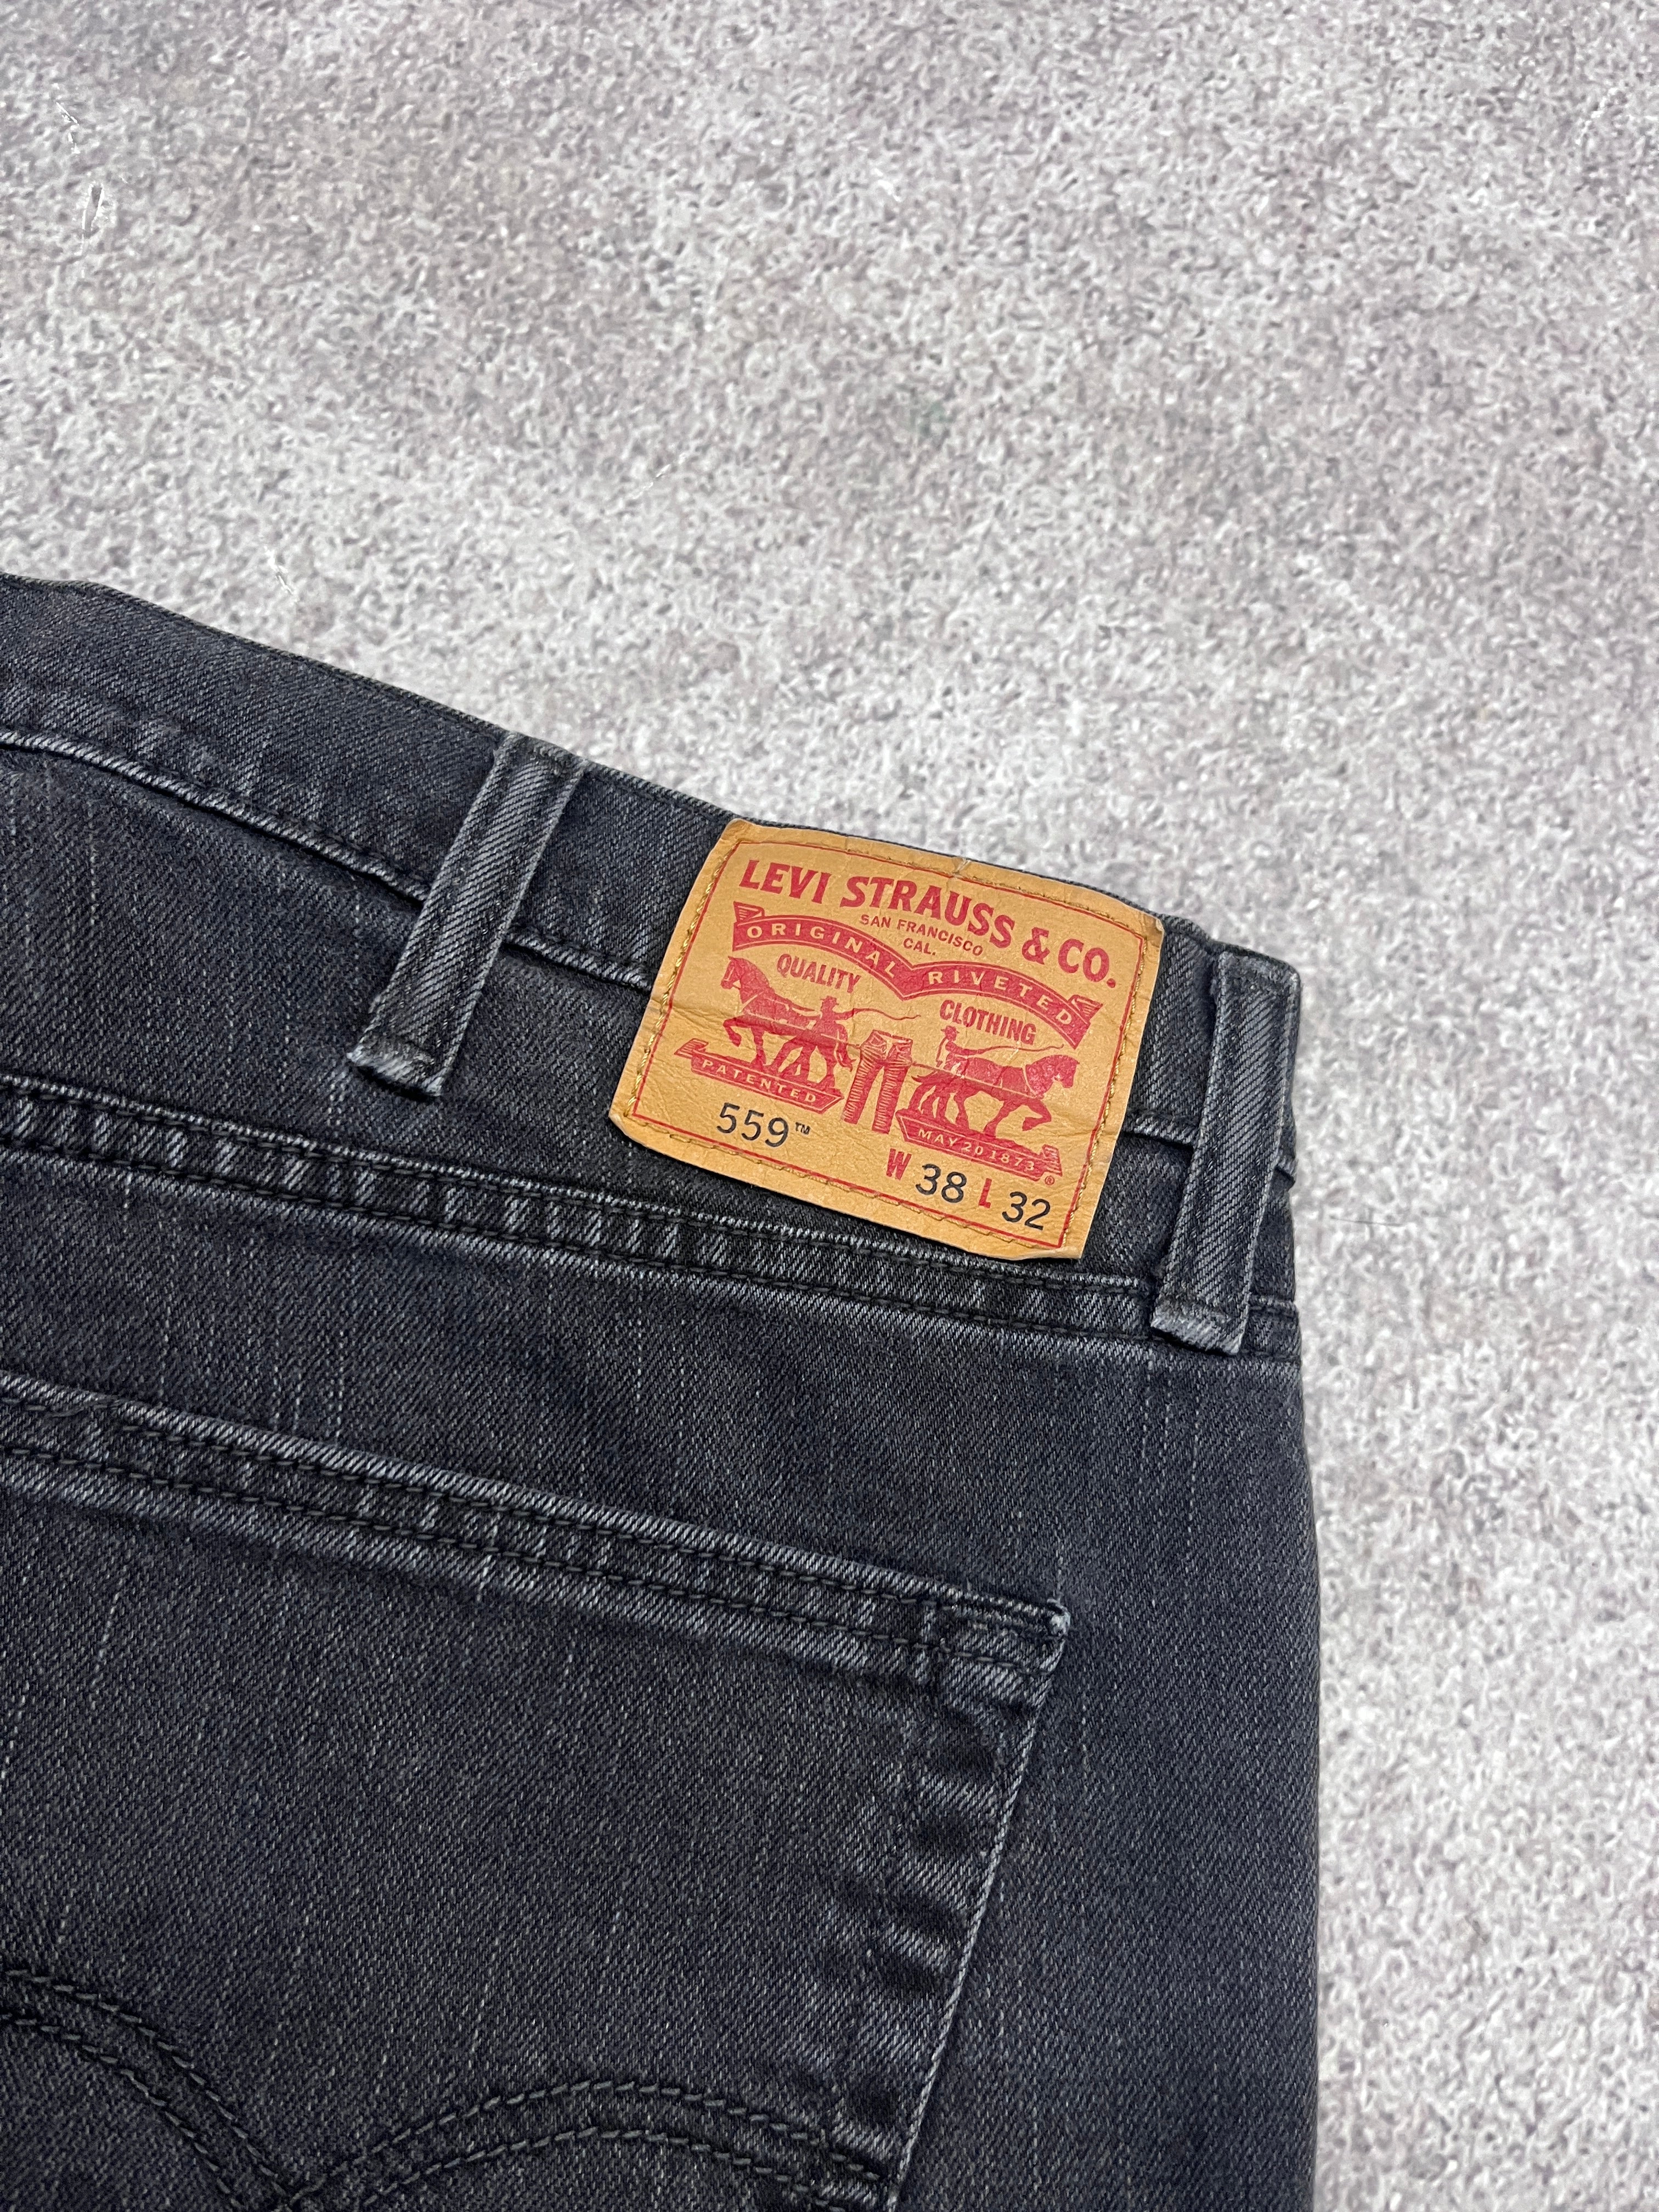 Vintage Levi 559 Denim Jeans  // W38 L32 - RHAGHOUSE VINTAGE